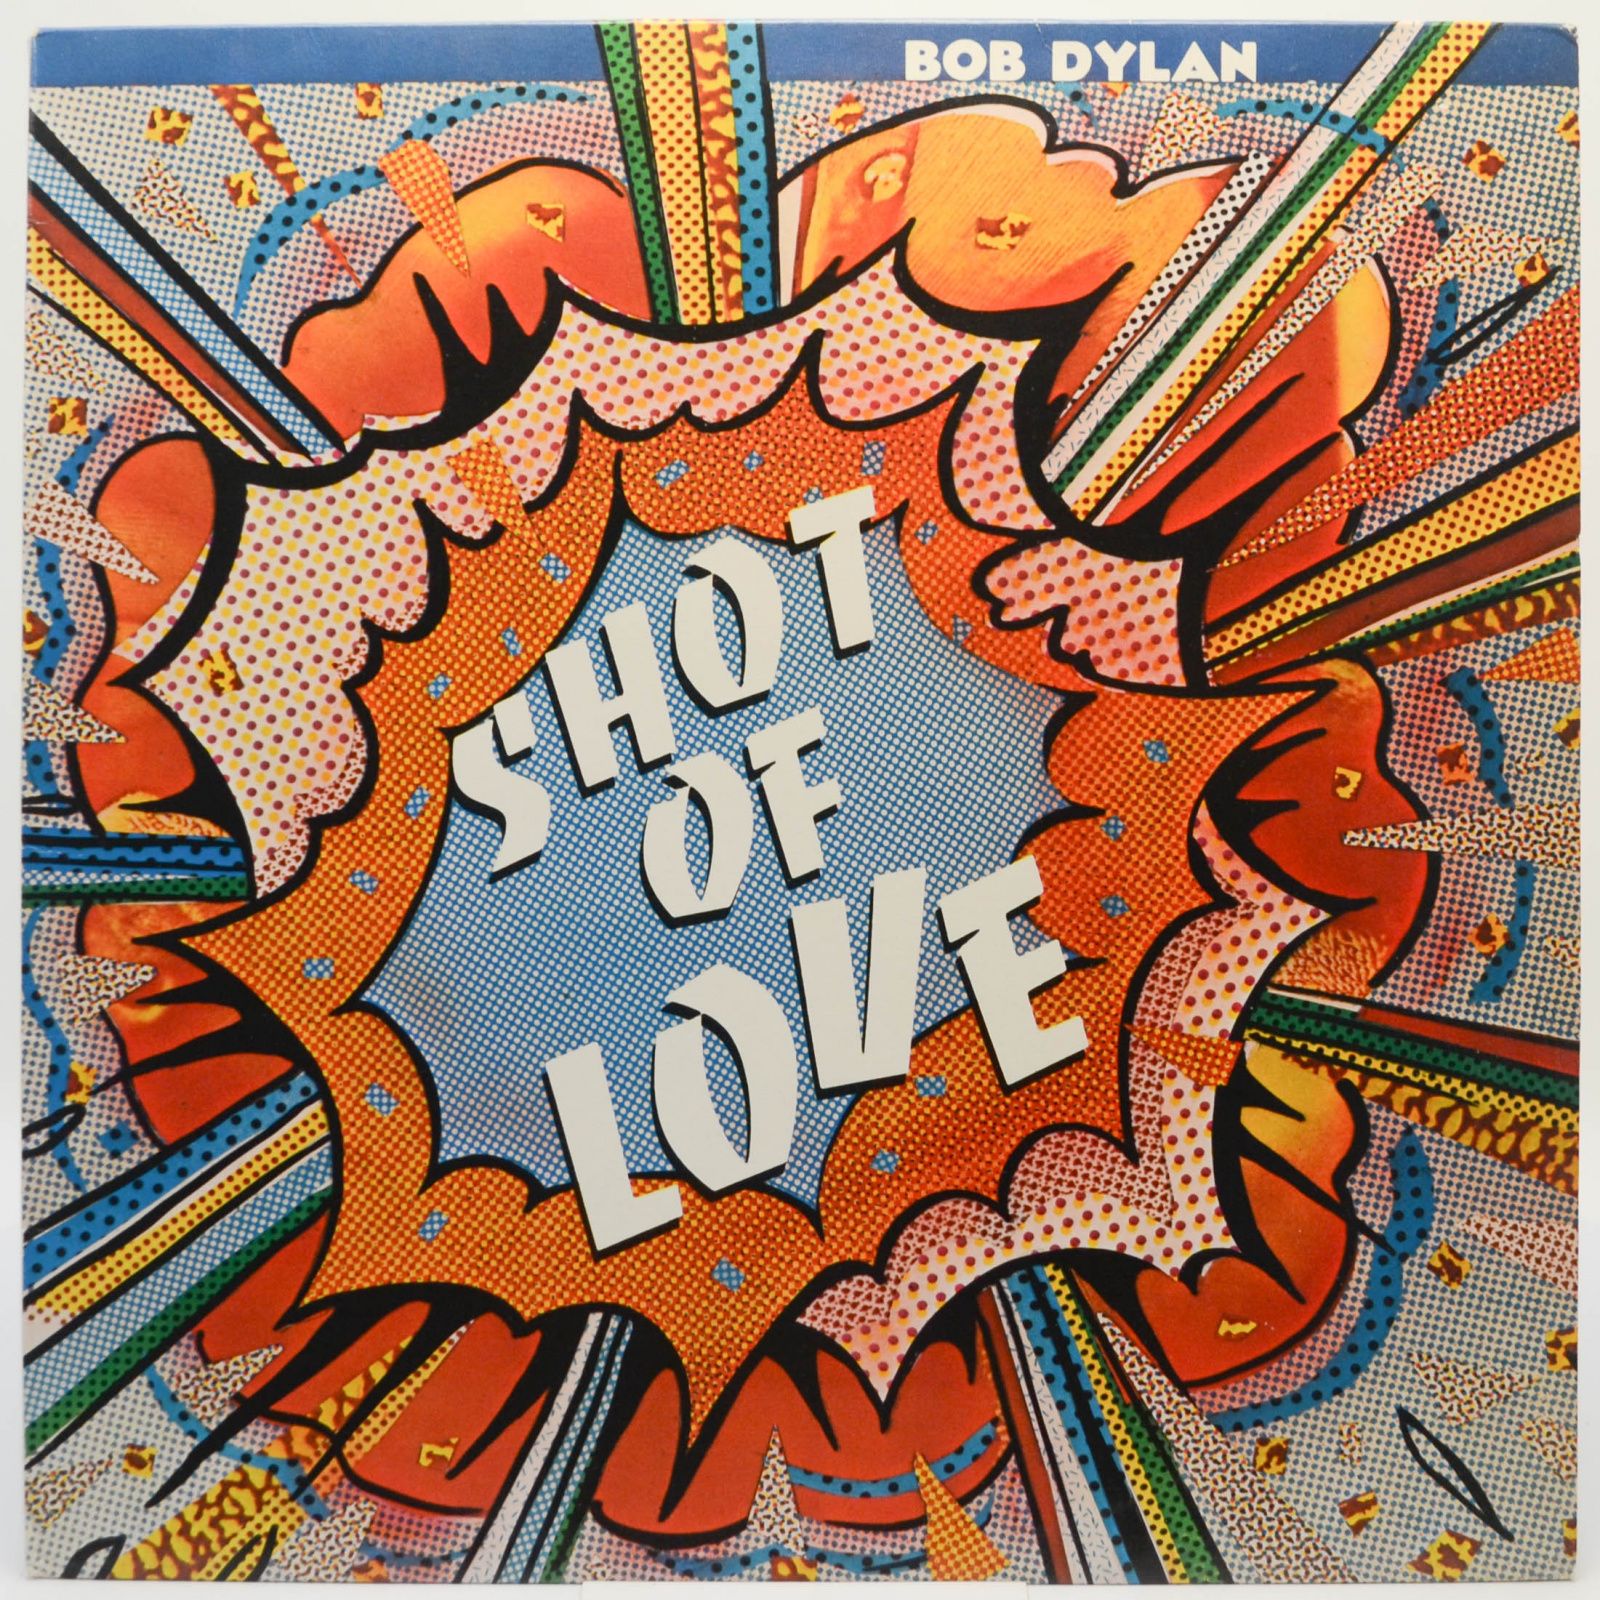 Bob Dylan — Shot Of Love, 1981